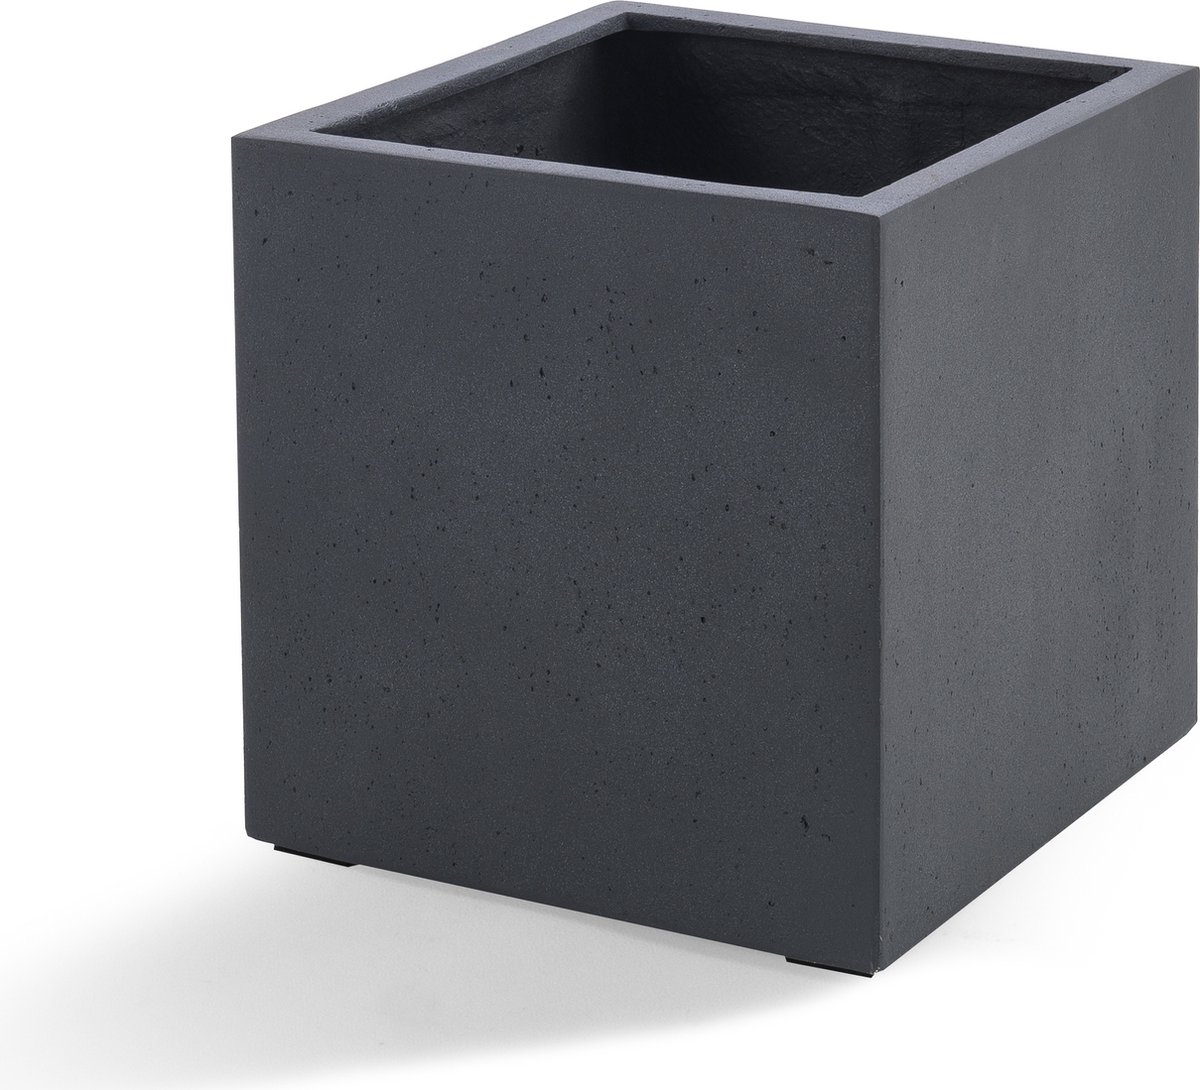 Grigio Cube S 30x30x30 Anthracite-Concrete